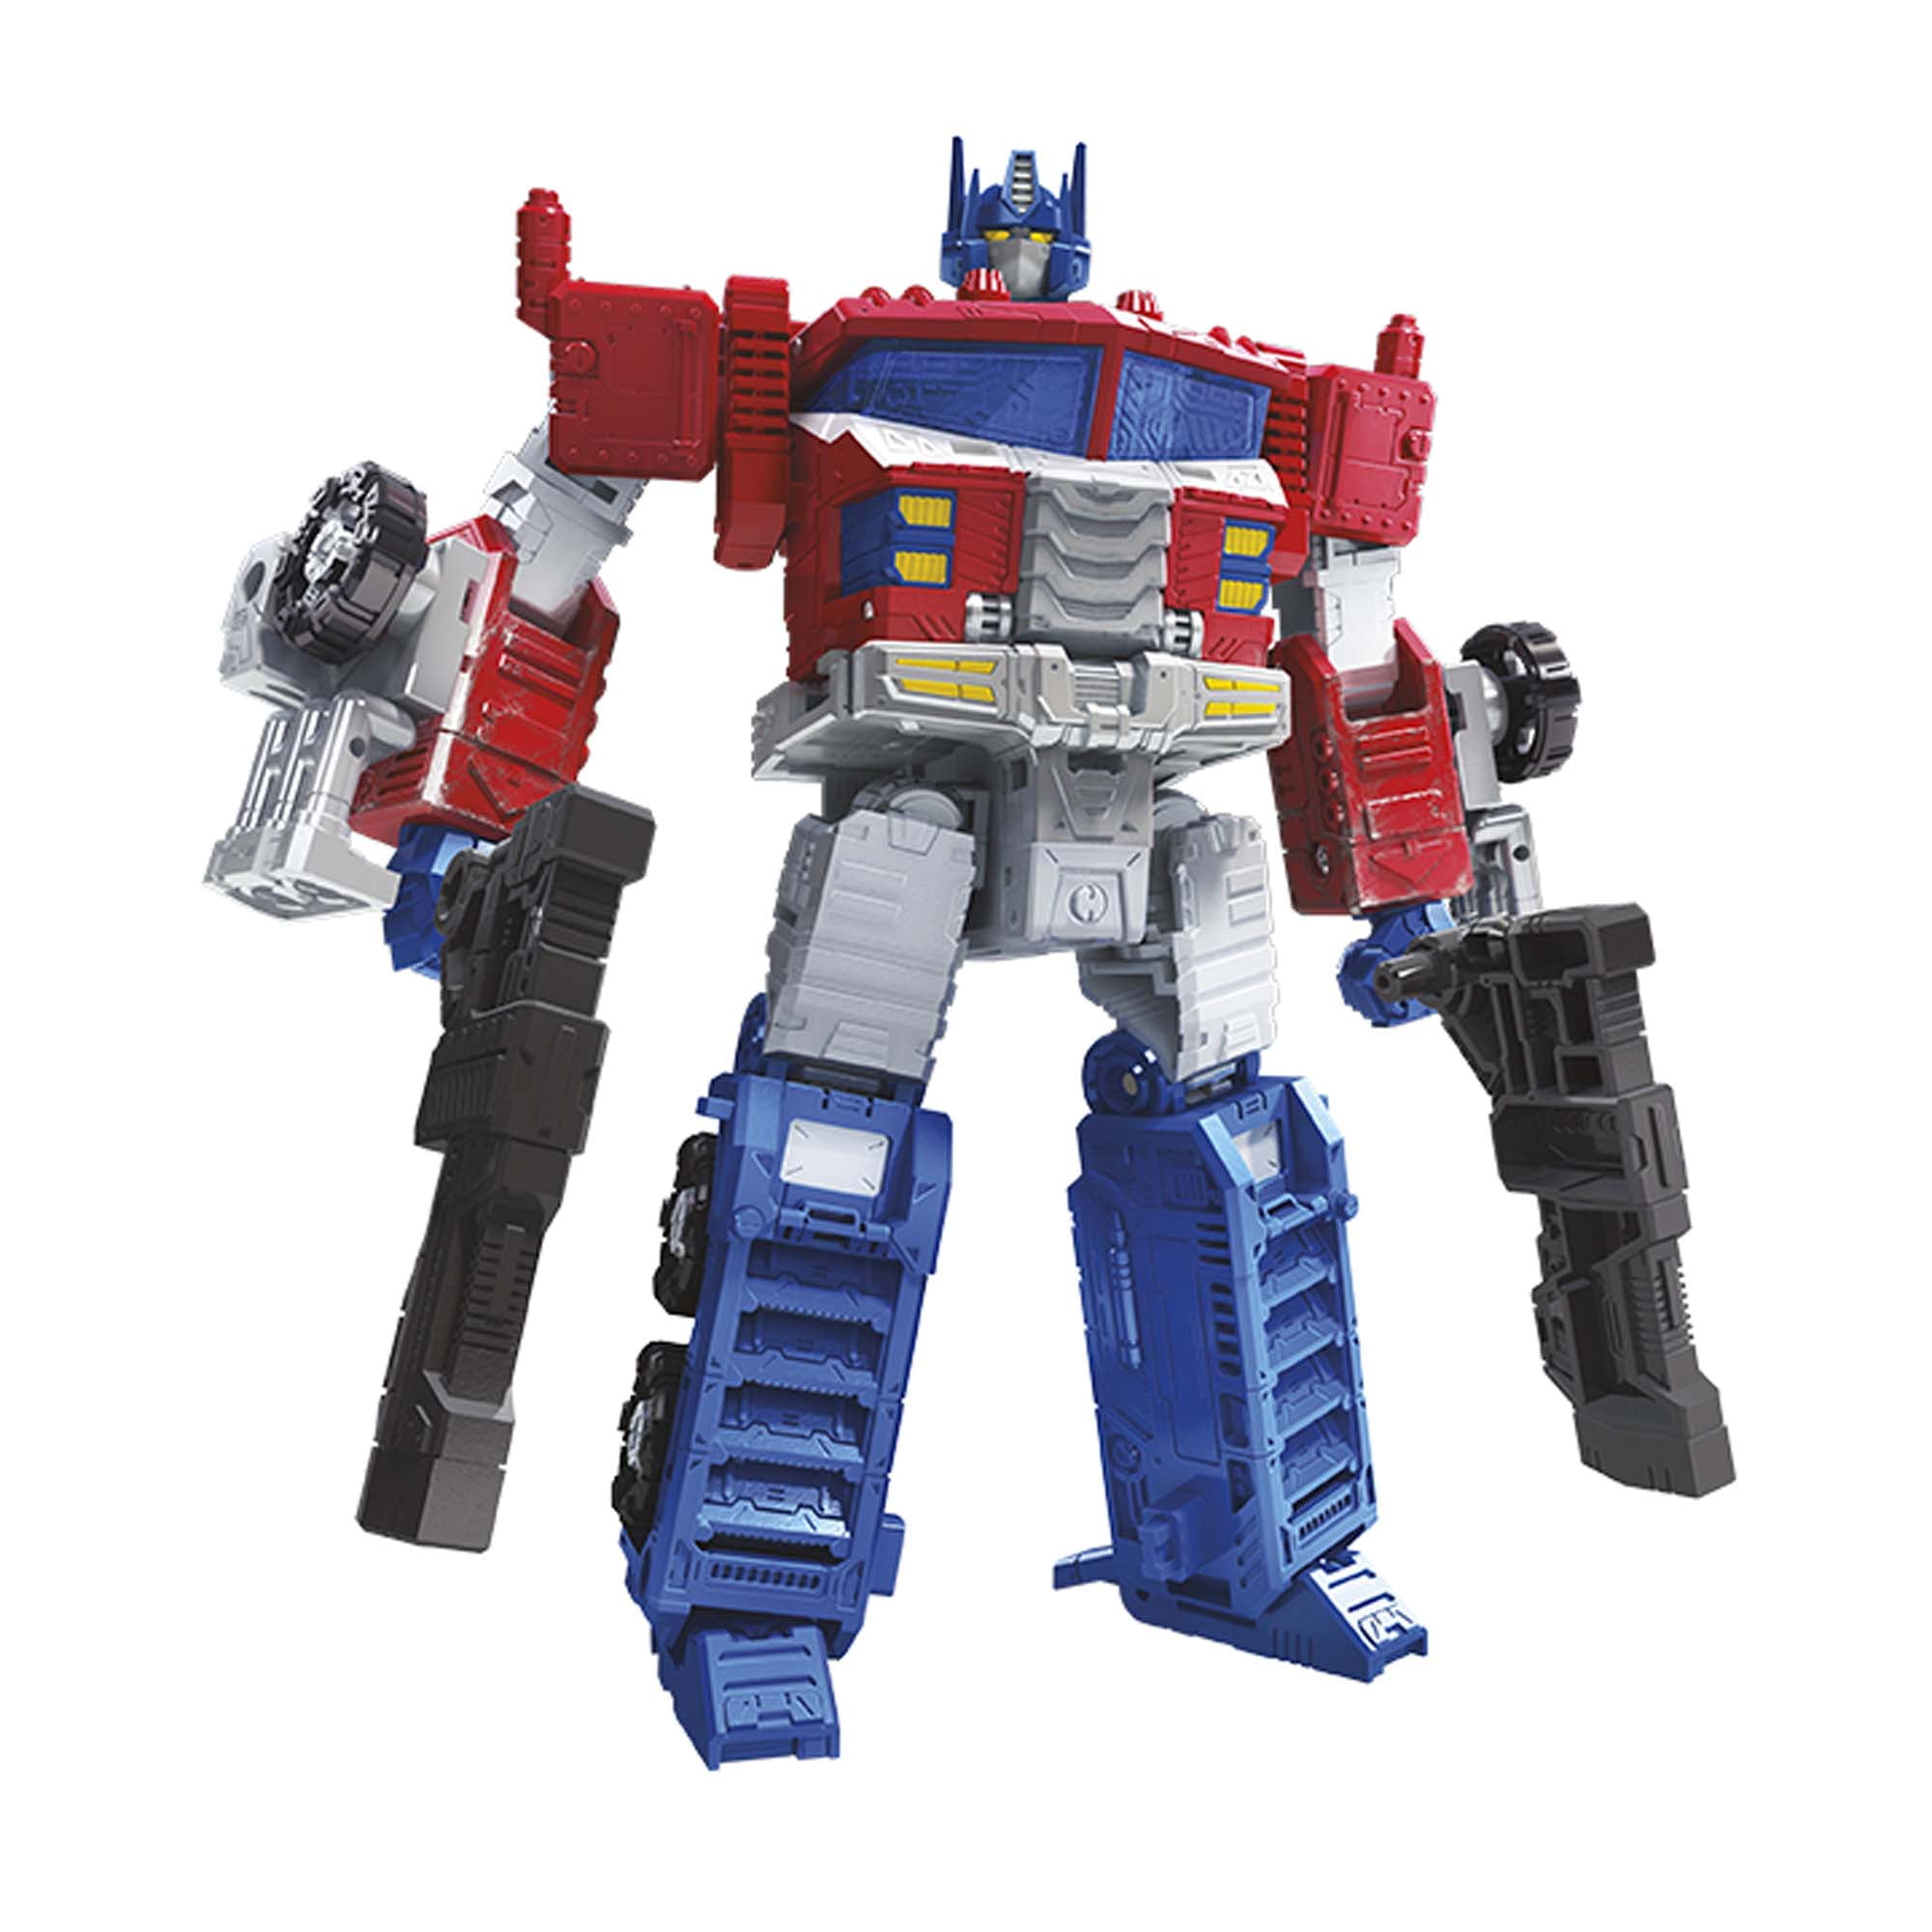 Transformers-War-for-Cybertron-Leader-WFC-S40-Galaxy-Upgrade-Optimus-Prime_2e84d8ee-bb1f-4838-a4e9-2e34e37234d7_1.17f043858a6766d1b903a1e5be1ada22.jpeg